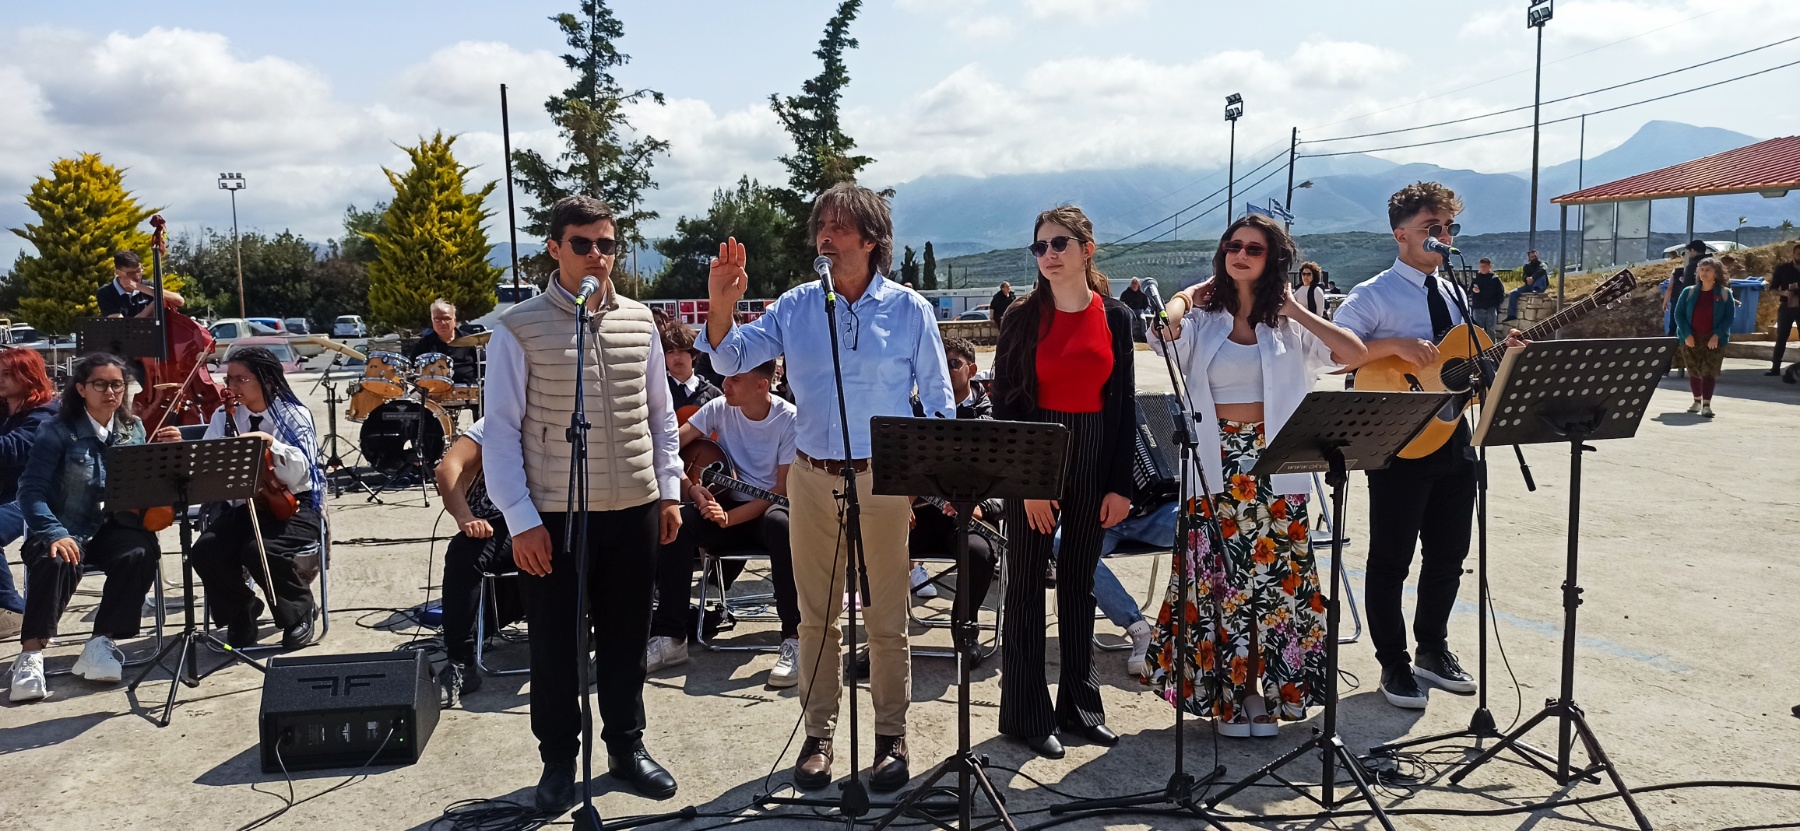 Αρκαλοχώρι Λέκκας μαθητές συναυλία περιφέρεια Κρήτης